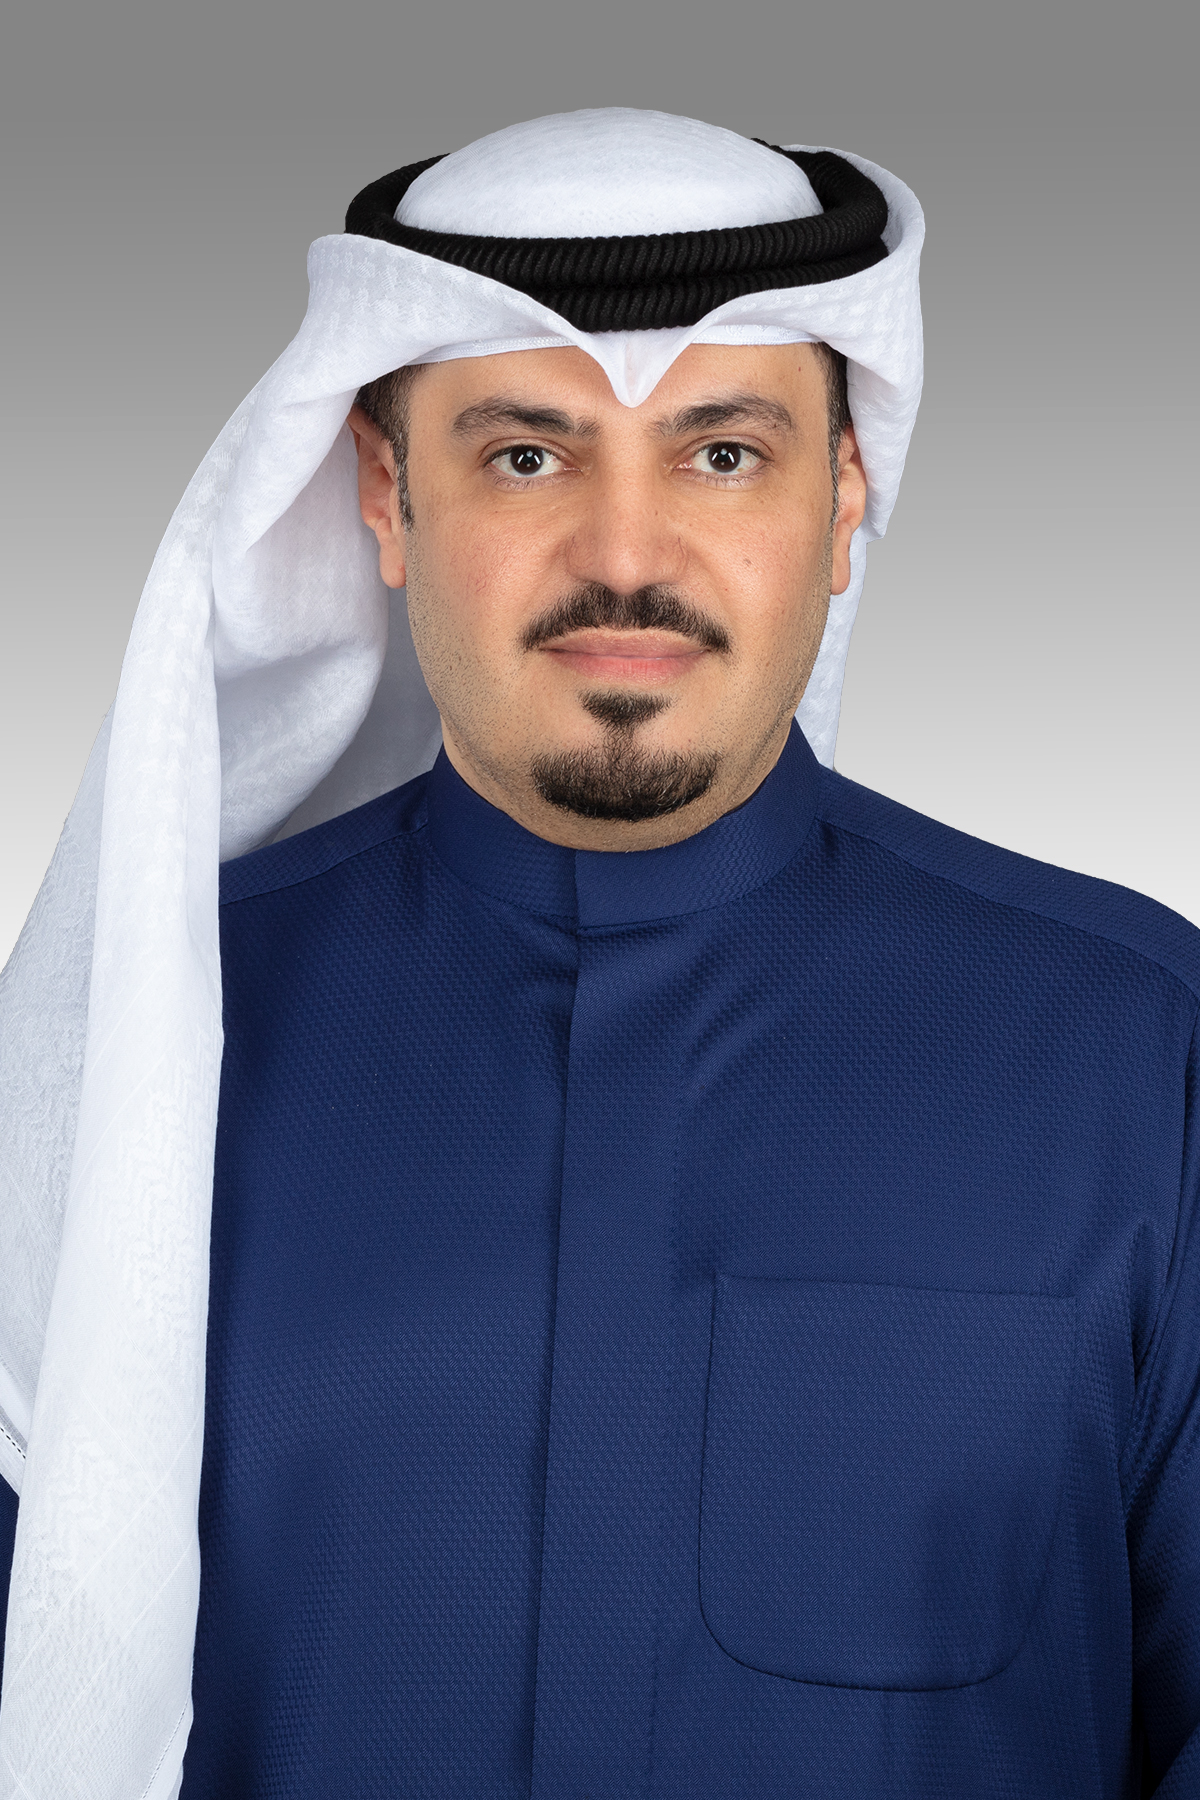 هشام الصالح يقترح نقل تبعية أجهزة الأدلة الجنائية والطب الشرعي  إلى وزارة العدل